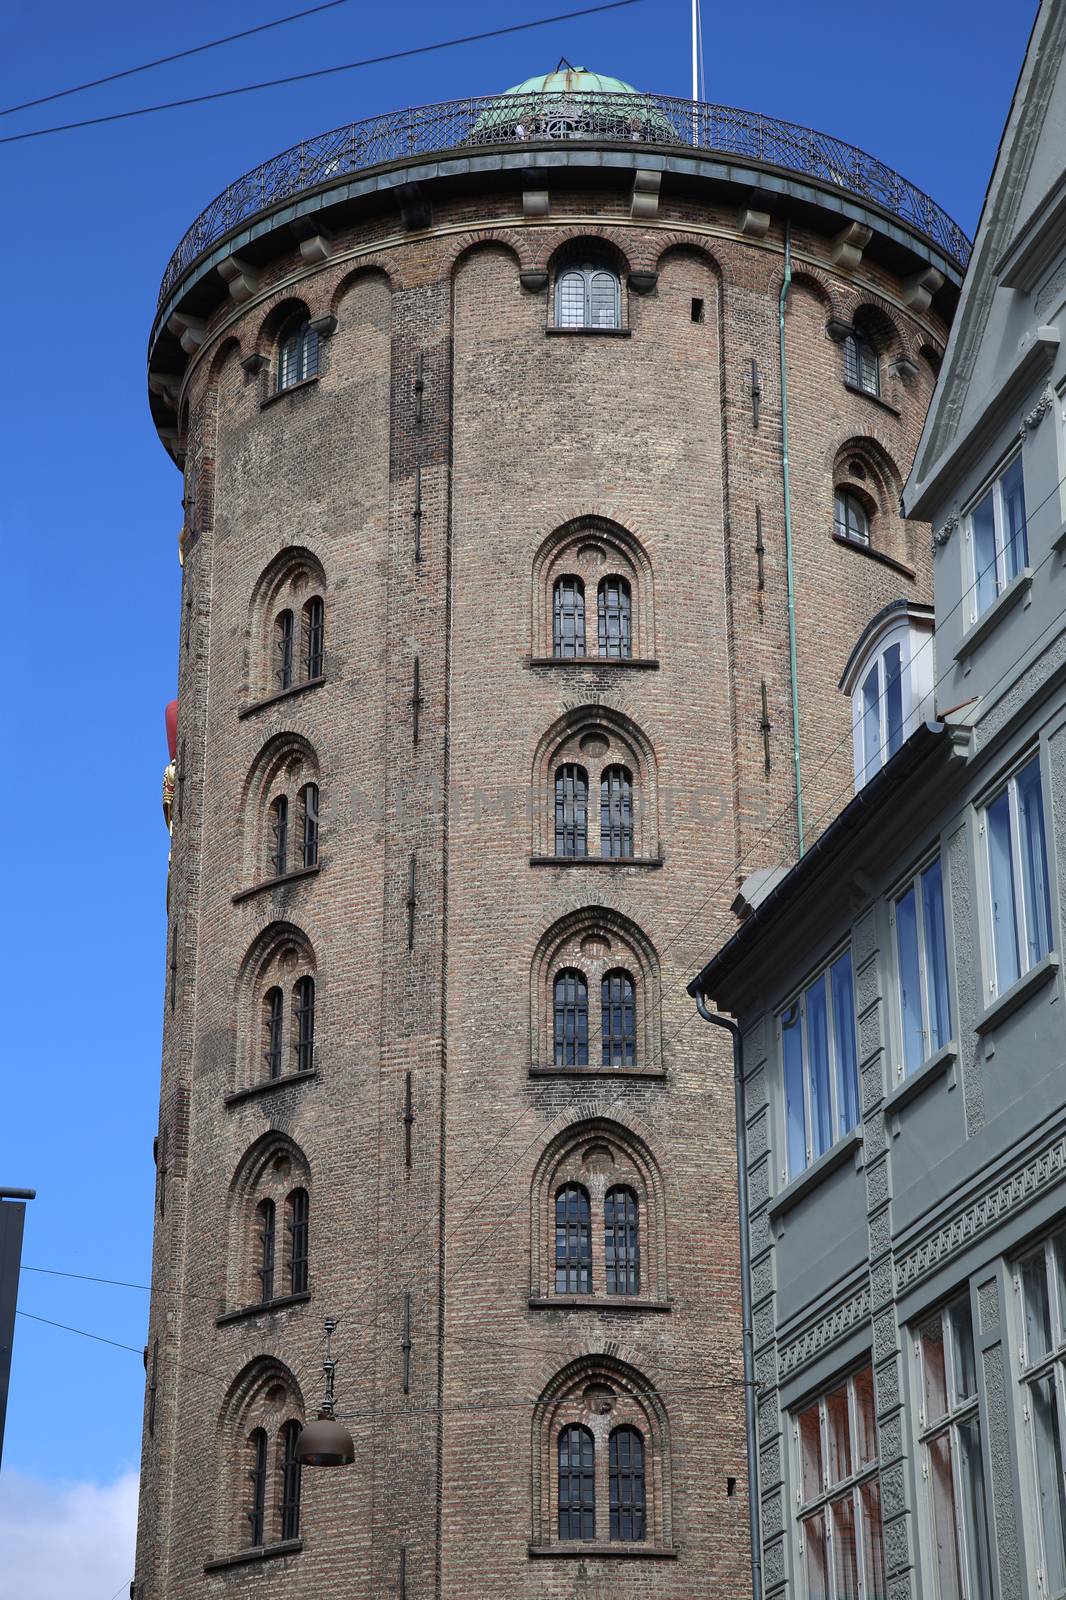 The Rundetaarn (Round Tower) in central Copenhagen, Denmark by vladacanon